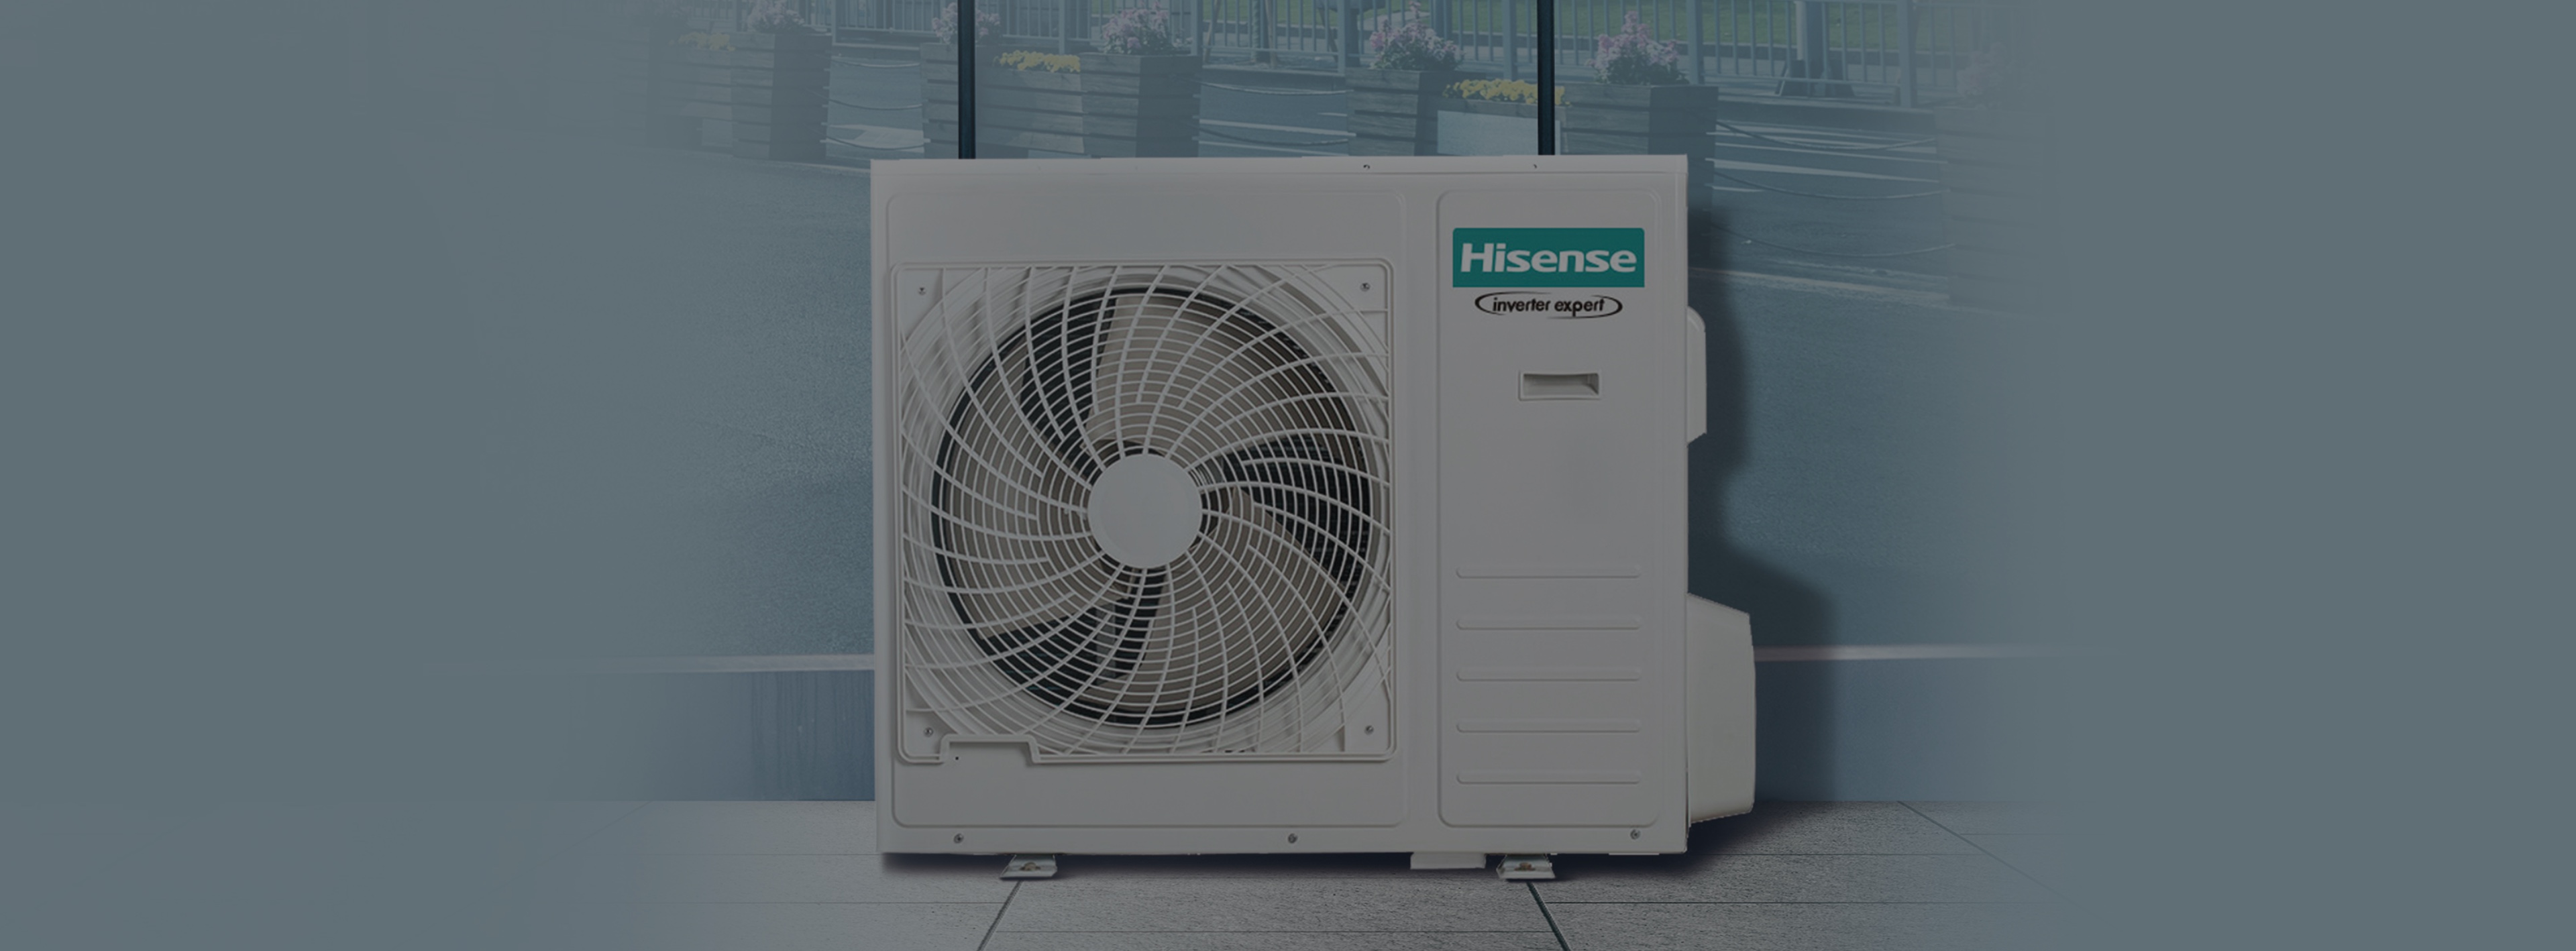 Hisense Air Conditioner 5